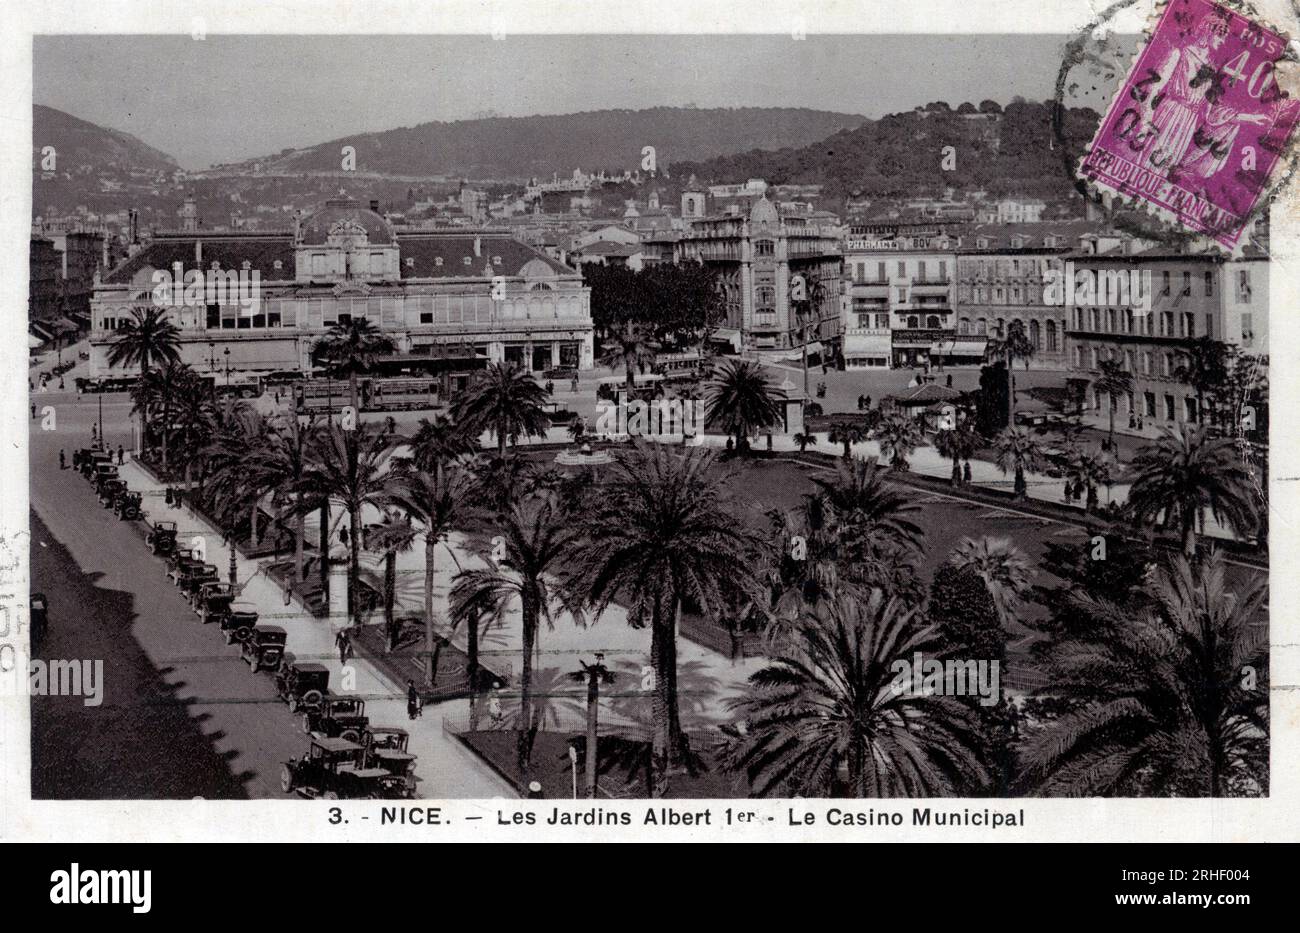 Provence Alpes Cote d'Azur, Alpes Maritimes (06), Nice : vue des jardins Albert Ier et du Casino municipal place Massena - carte postale datee 1935 Banque D'Images